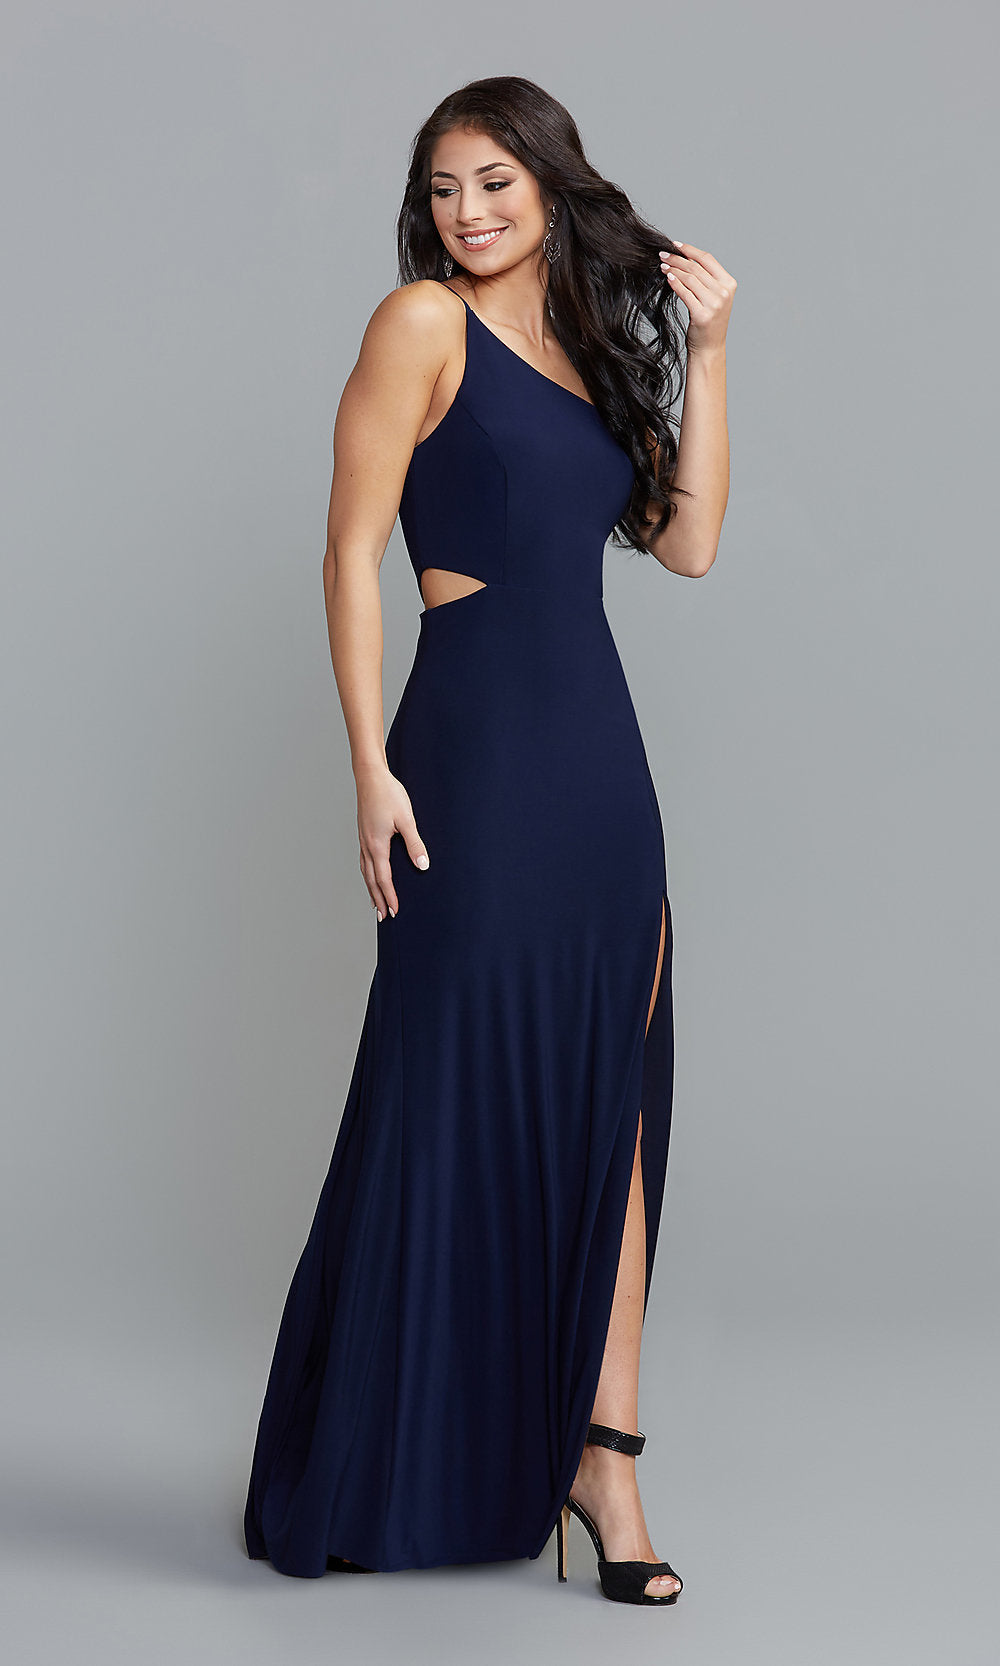 Prom Makeup To Match A Navy Blue Dress | Saubhaya Makeup